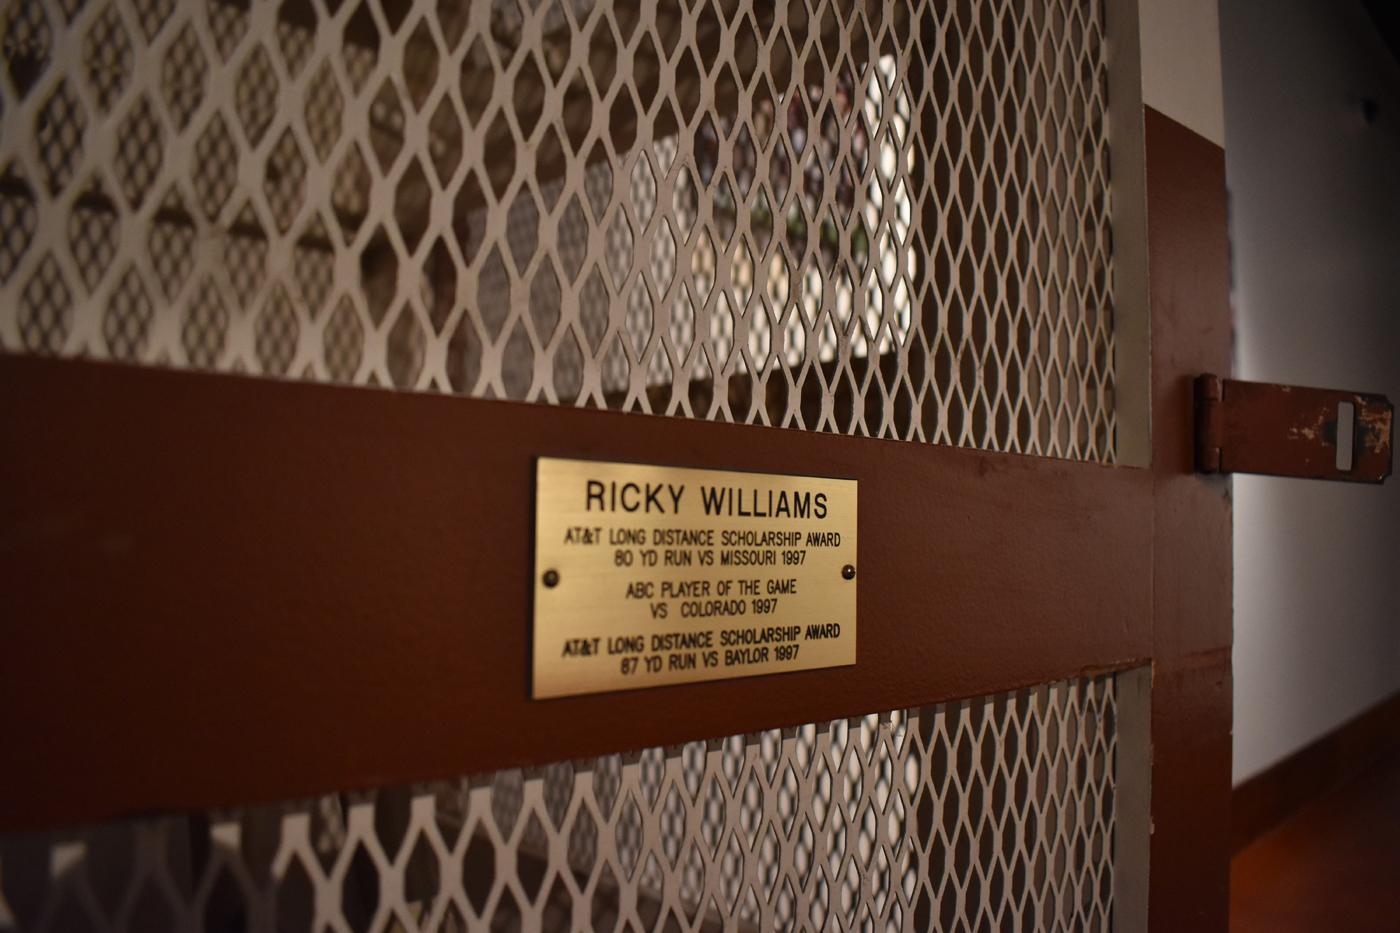 Ricky Williams' Locker